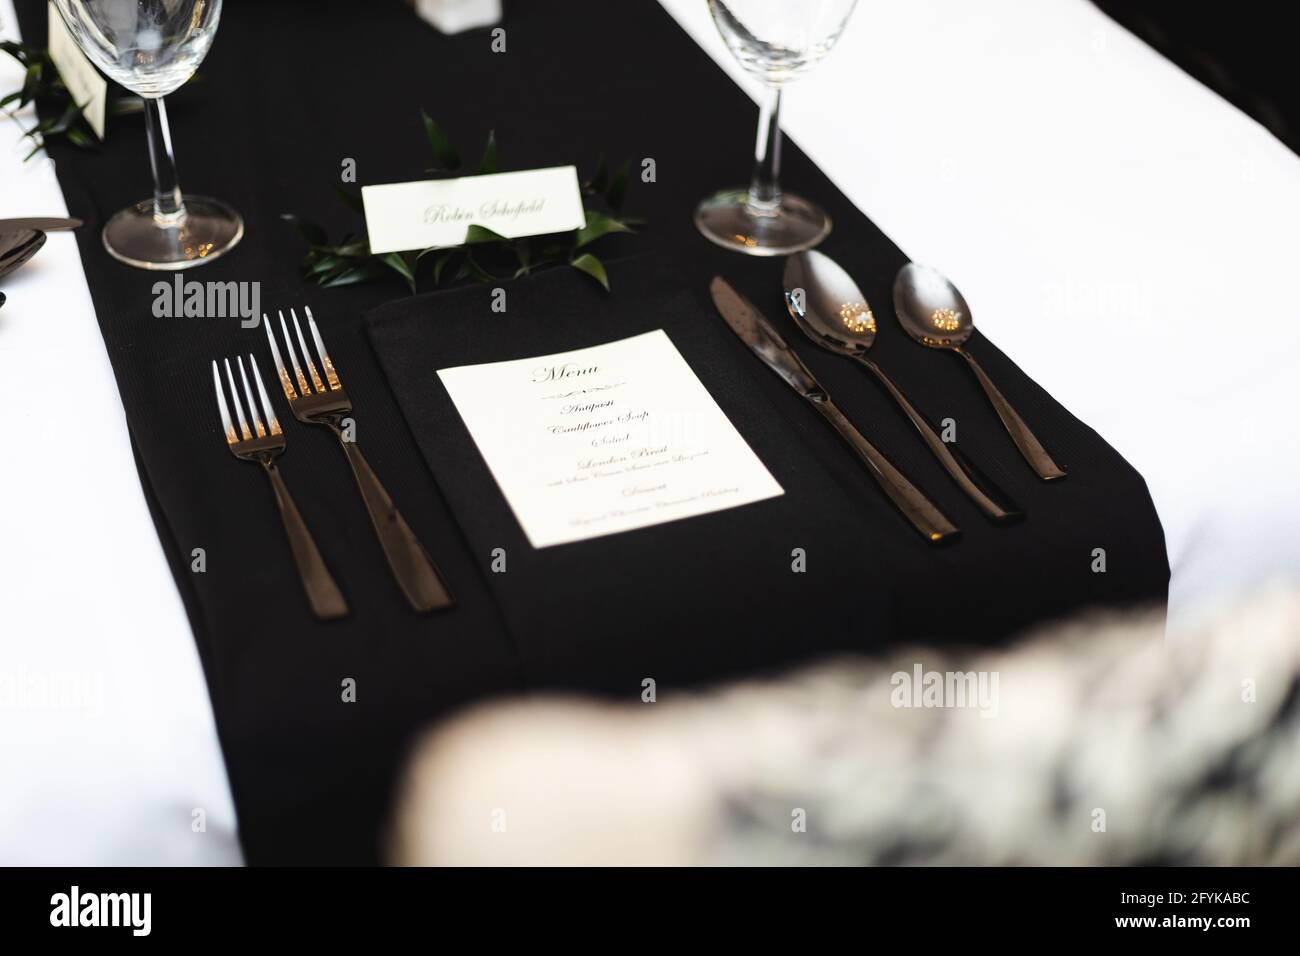 Ambiente personale per cene sociali in bianco e nero, forchette, cucchiai, coltello e menu Foto Stock